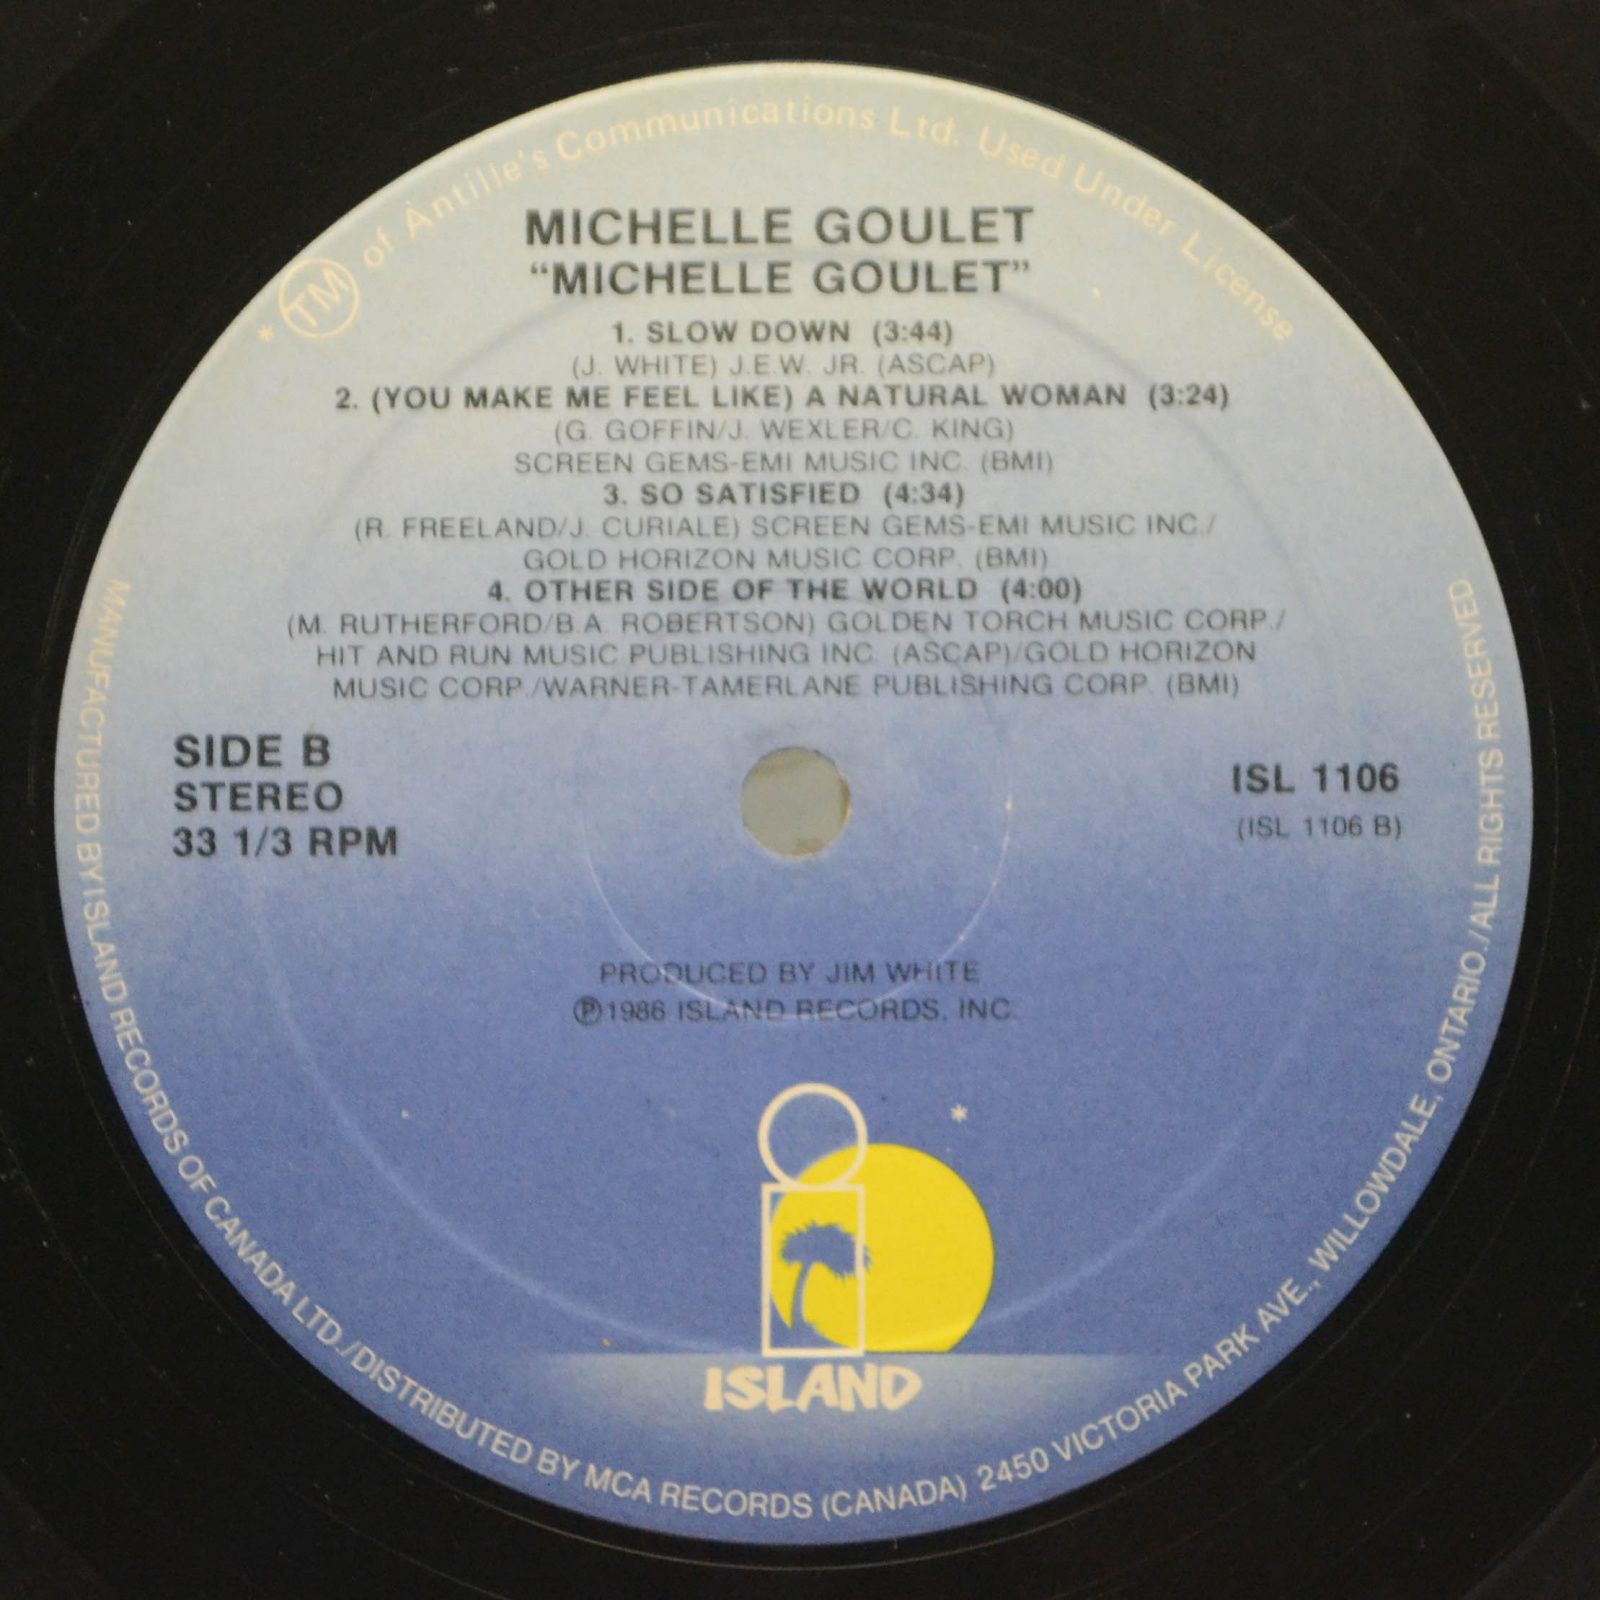 Michelle Goulet — Michelle Goulet, 1986